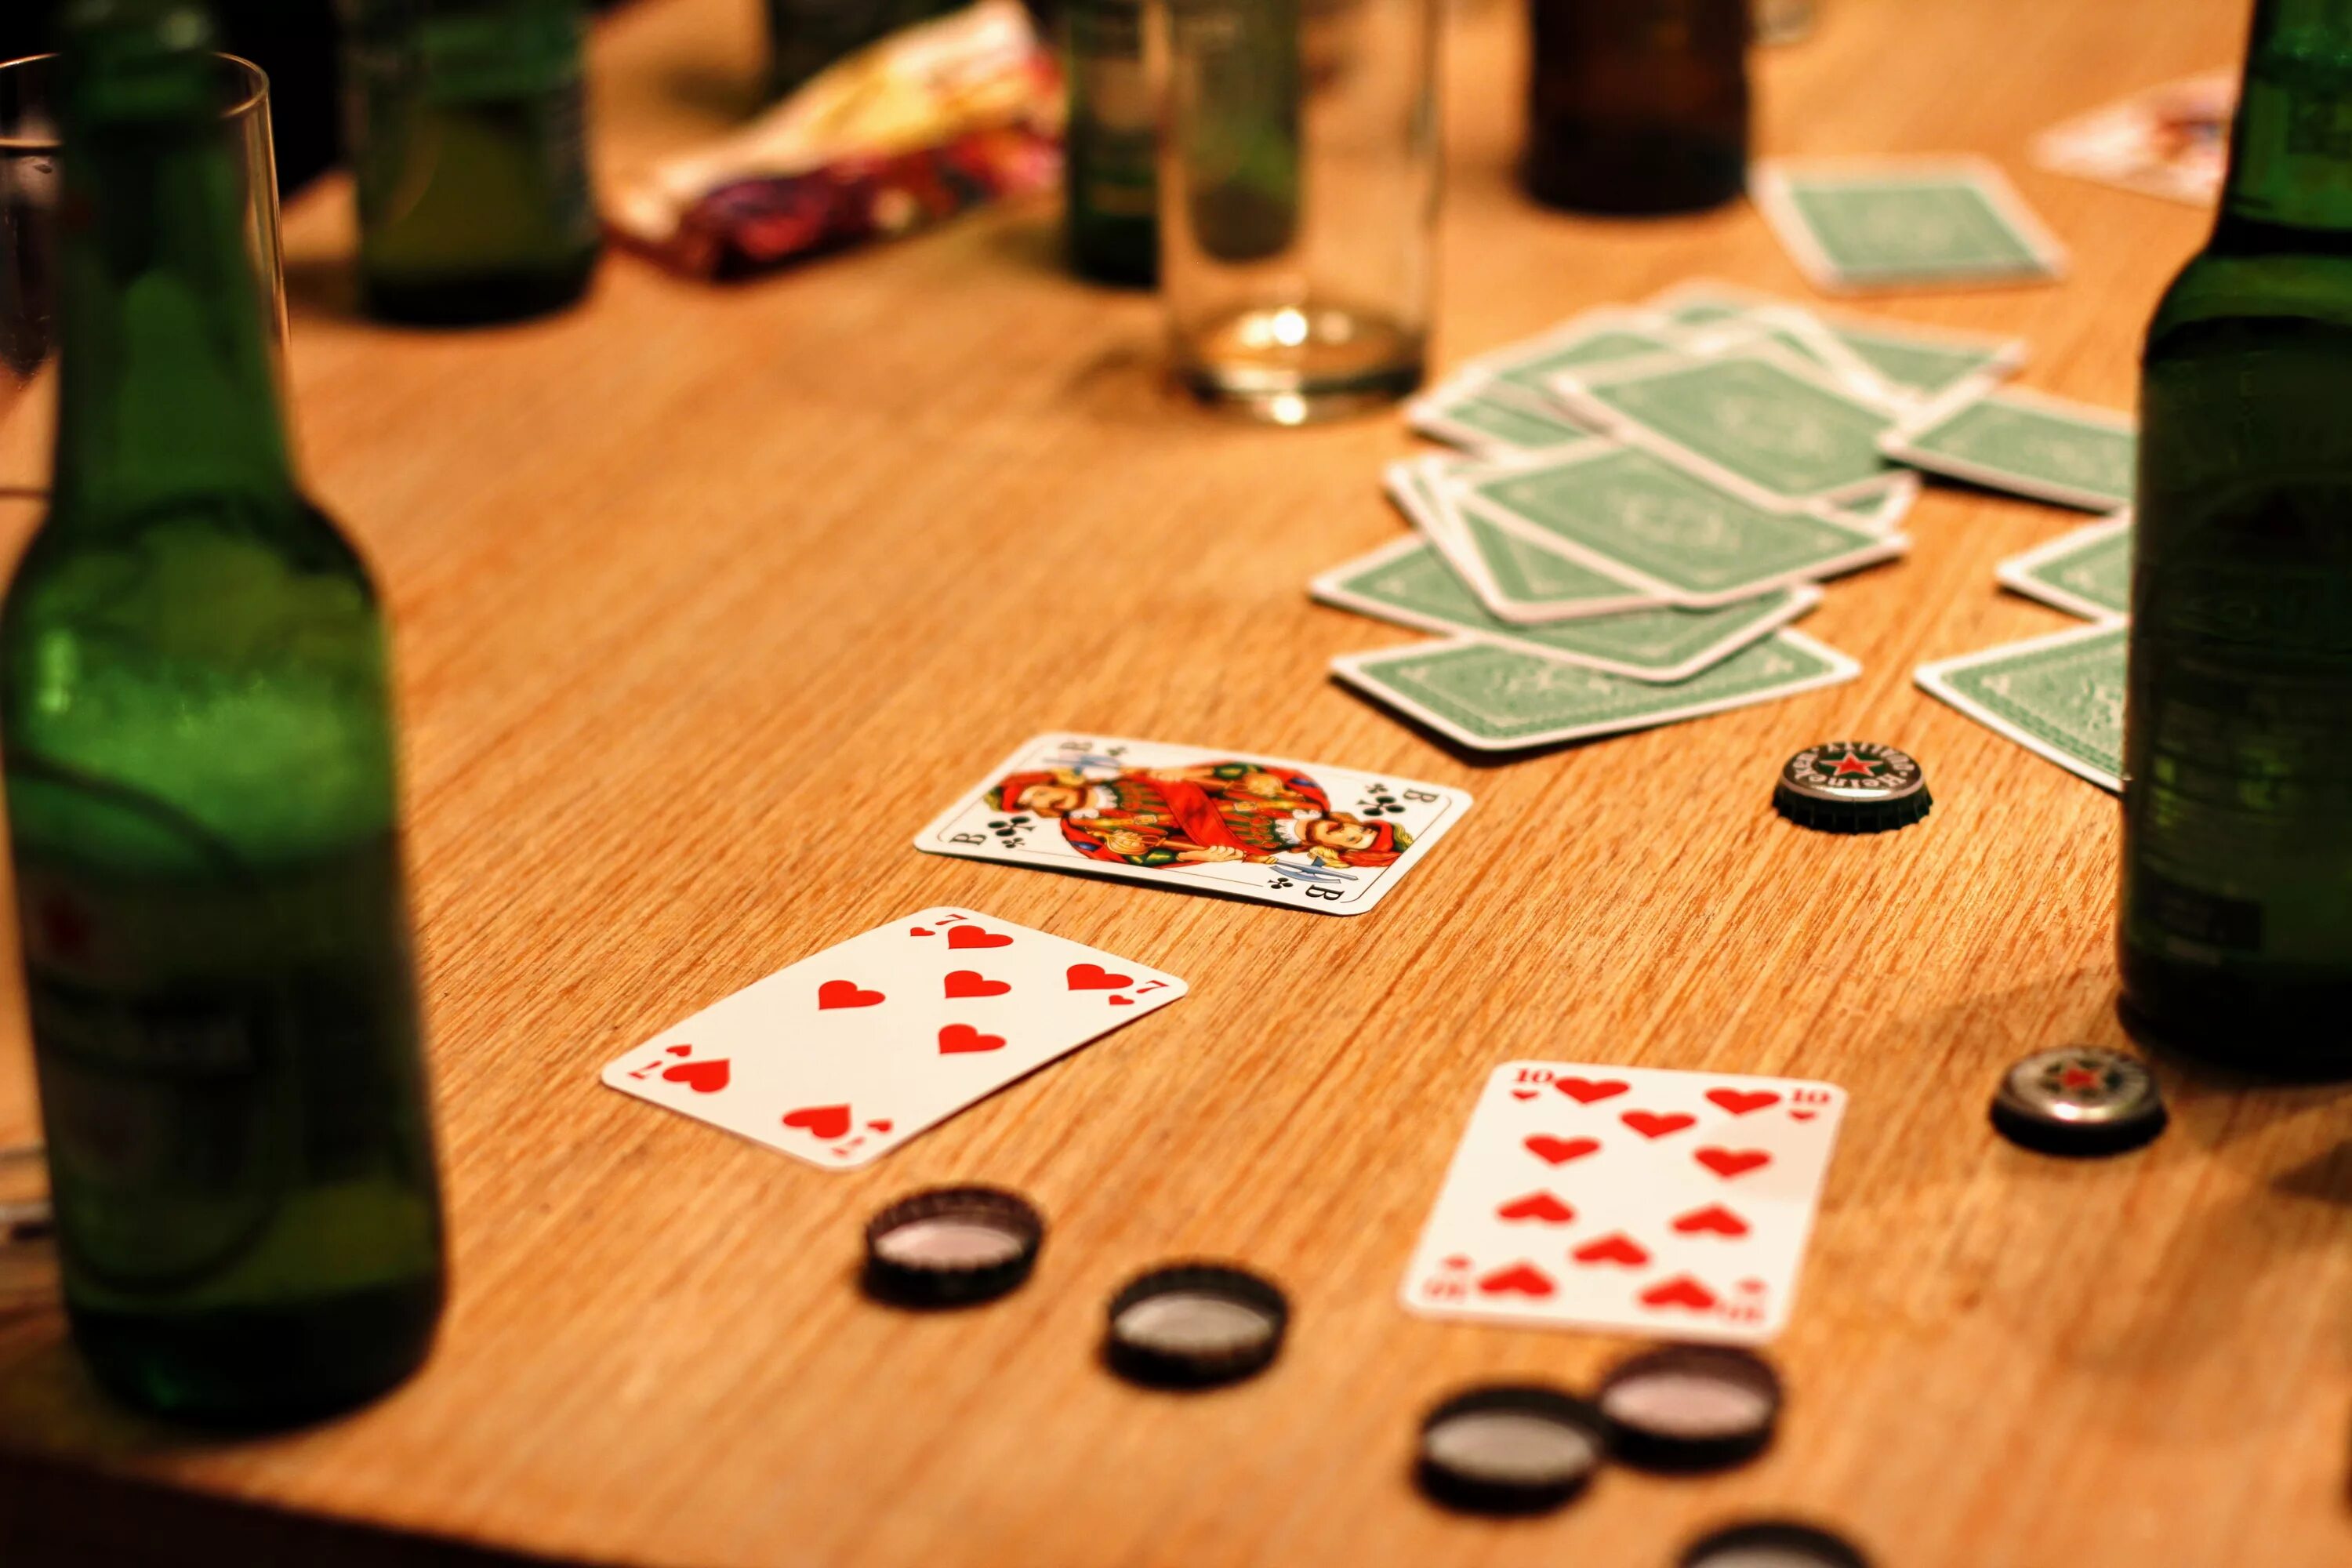 Картинки игр в карты. Карточный стол. Игра в карты. Азартная карточная игра. Карты выпивка.